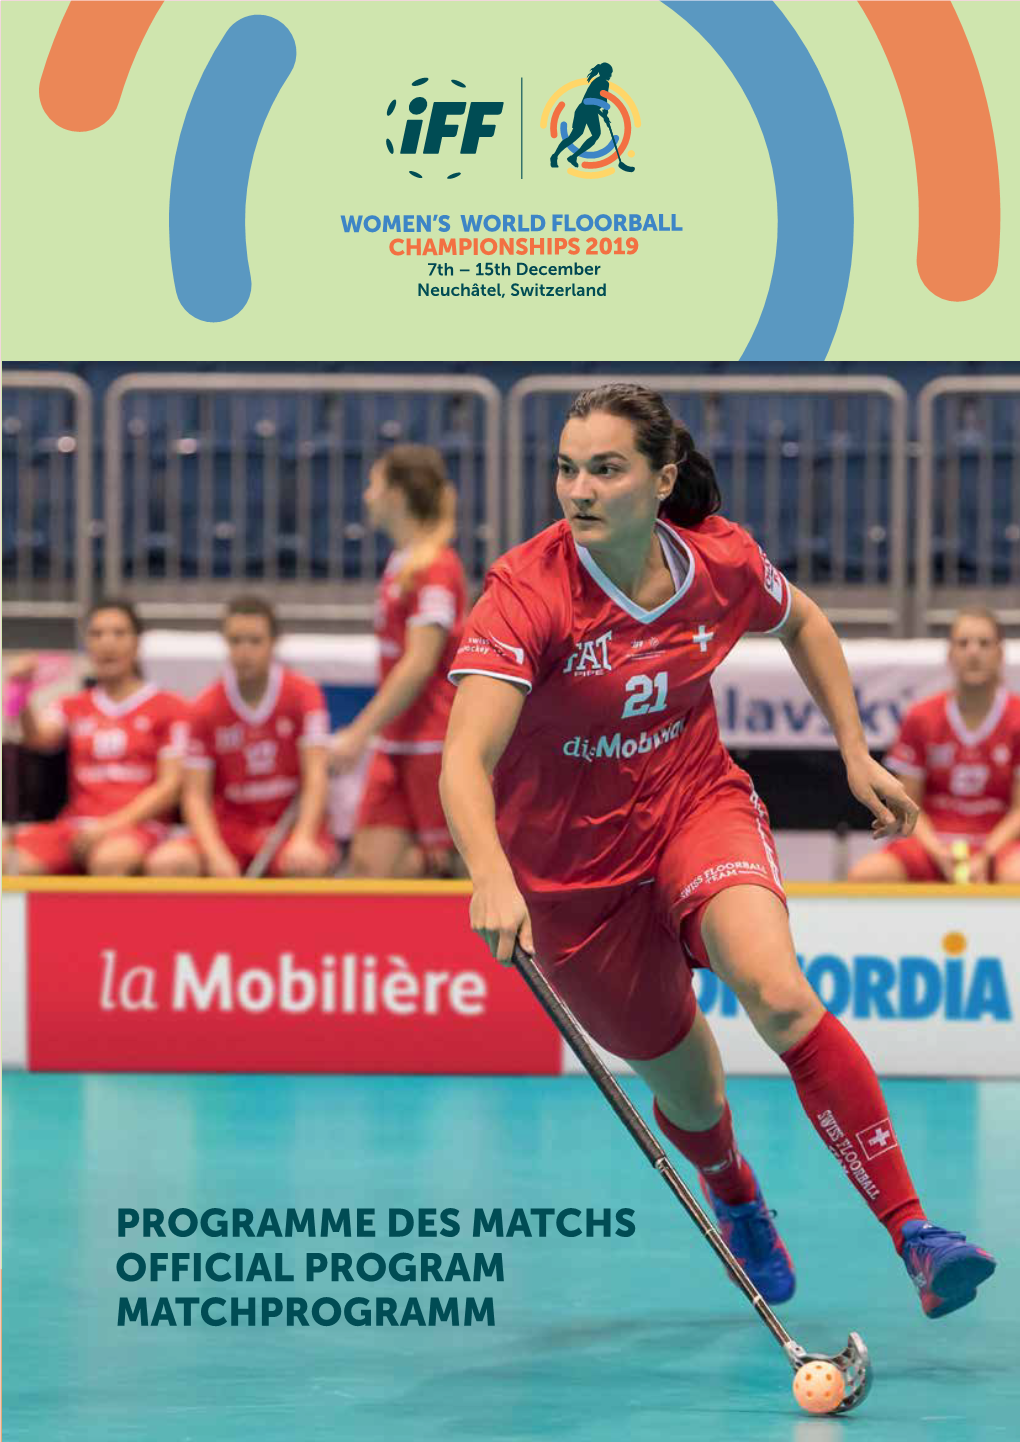 Programme Des Matchs Official Program Matchprogramm